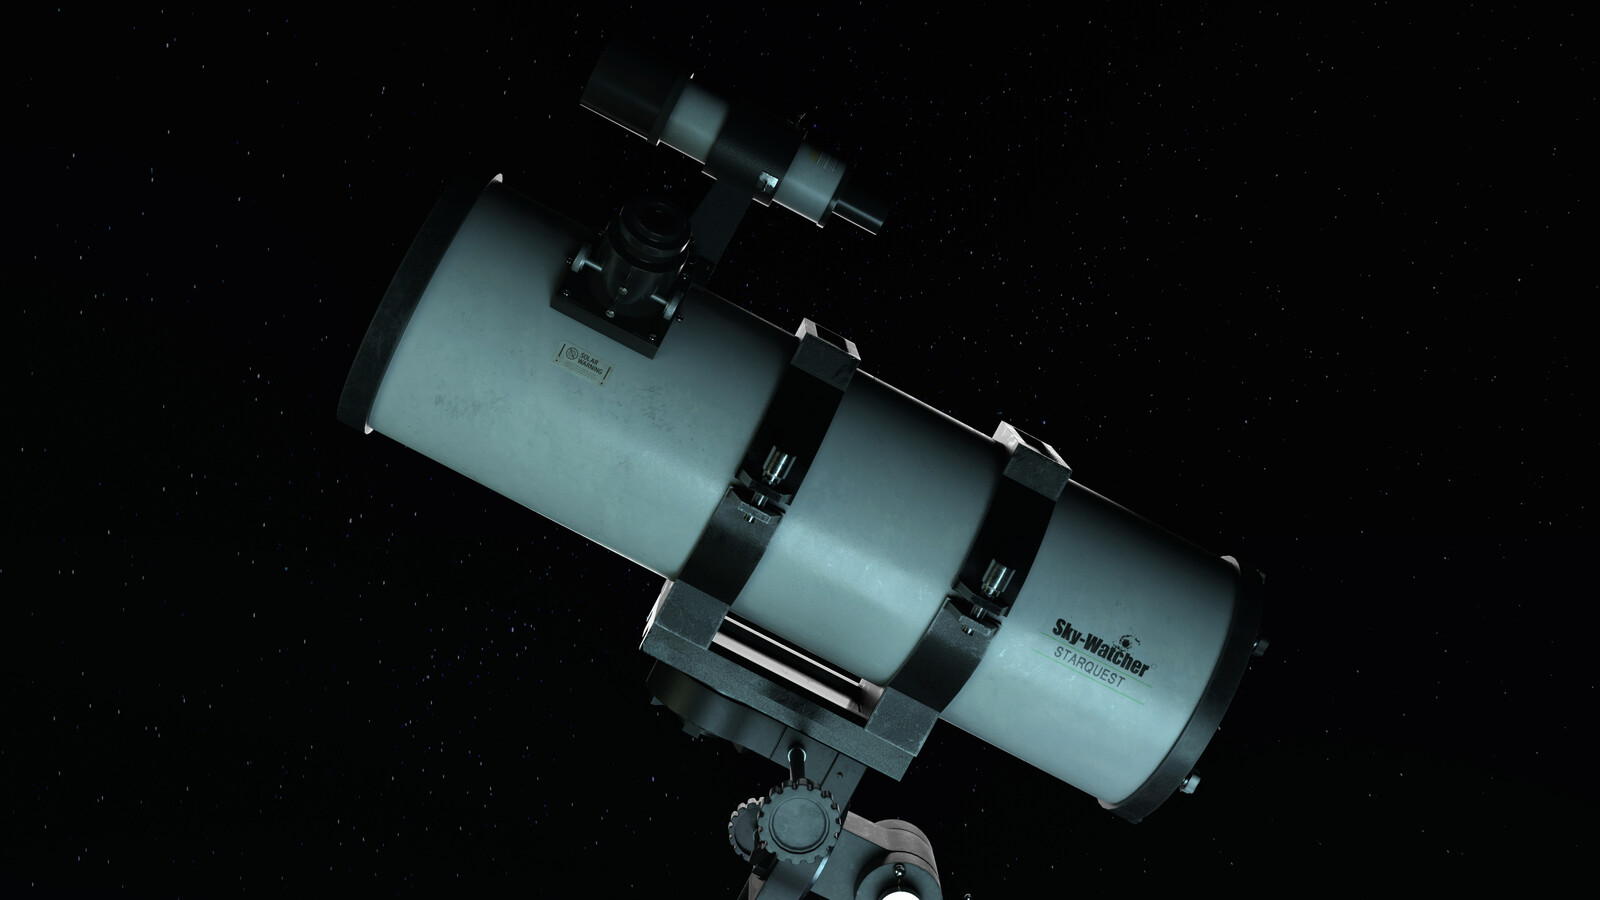 Sky-Watcher Telescope